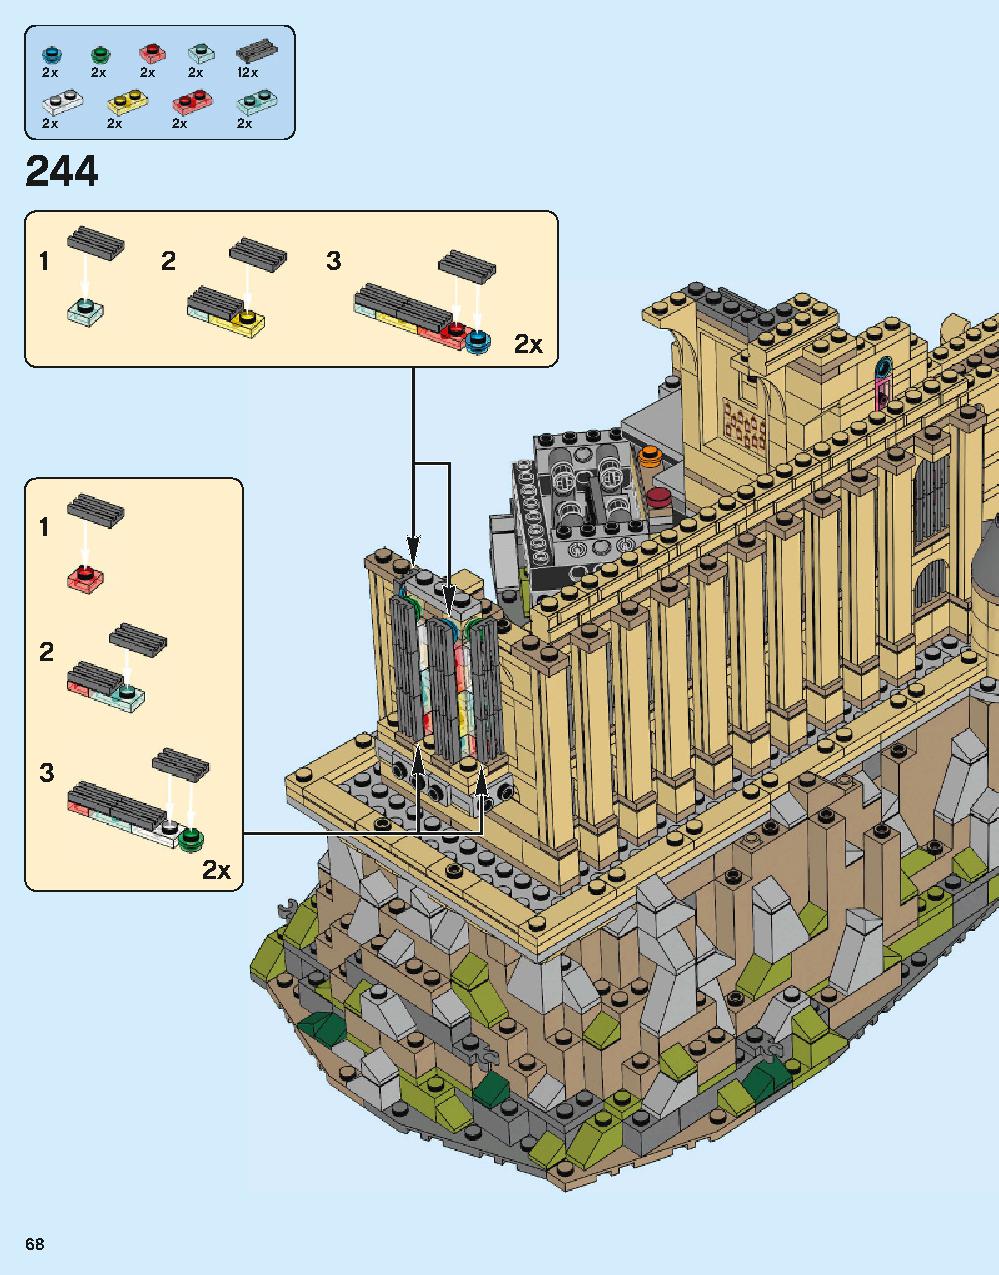 ホグワーツ城 71043 レゴの商品情報 レゴの説明書・組立方法 68 page